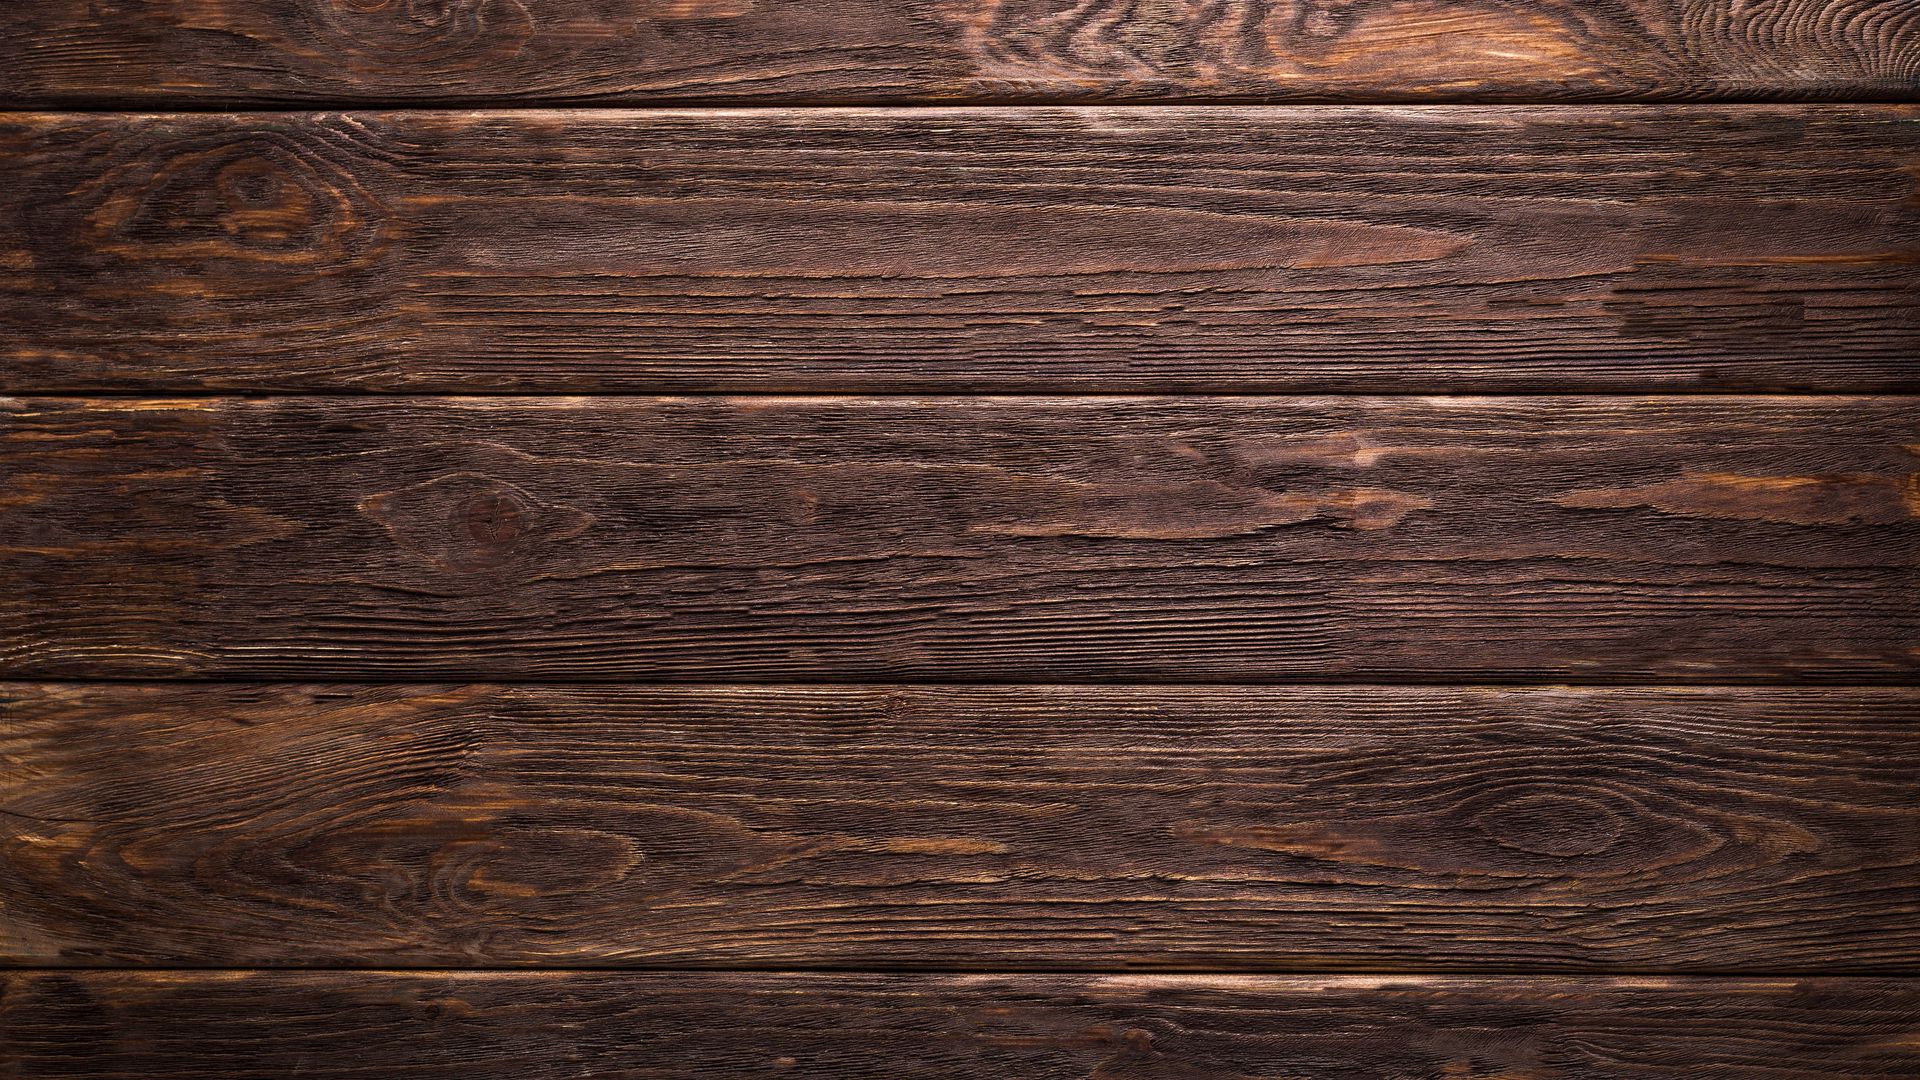 Hình nền gỗ texture với các đường vân gỗ tự nhiên sẽ làm cho không gian của bạn trở nên thật tuyệt vời và đậm chất tự nhiên. Hãy xem hình liên quan để thấy được sự đặc biệt của tự nhiên.